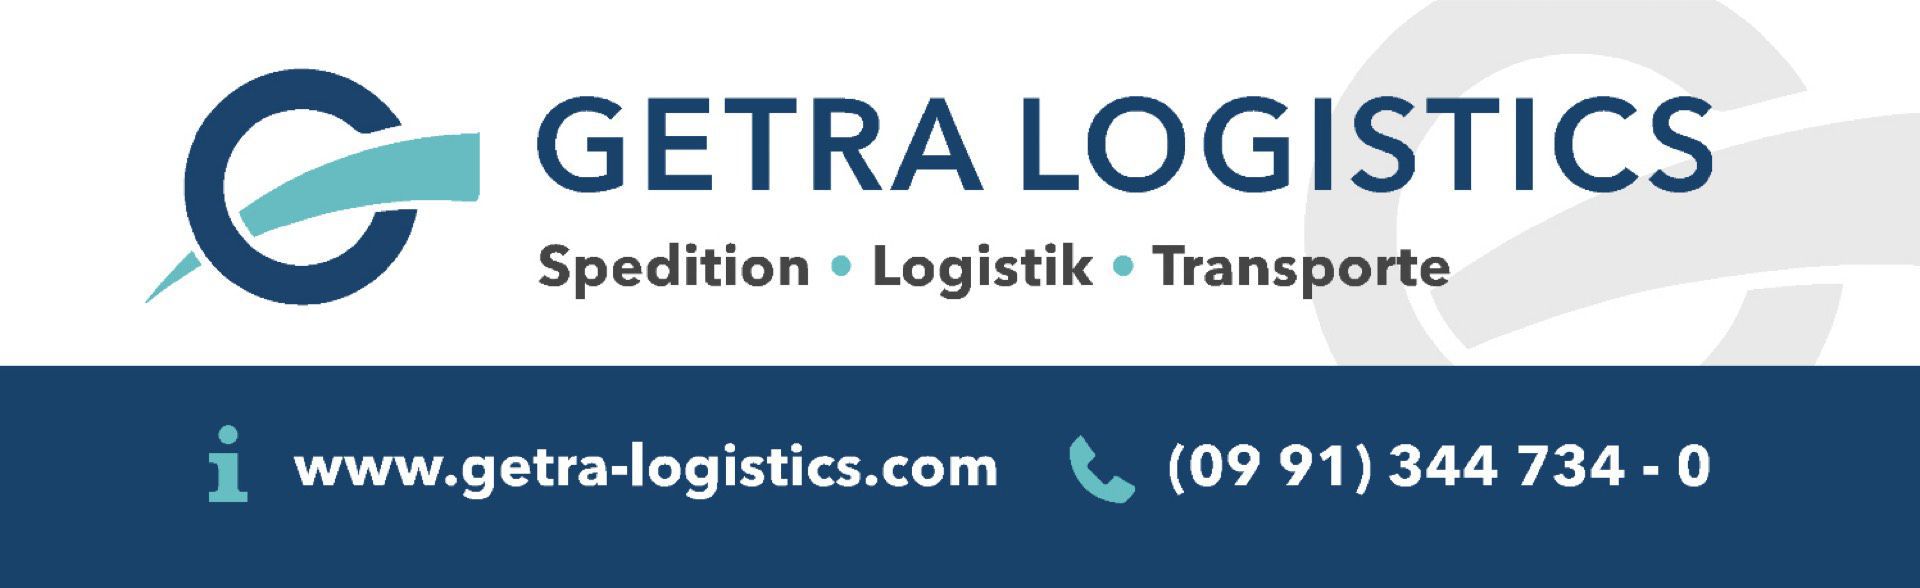 GETRA Logistics Deutschland GmbH & Co. KG